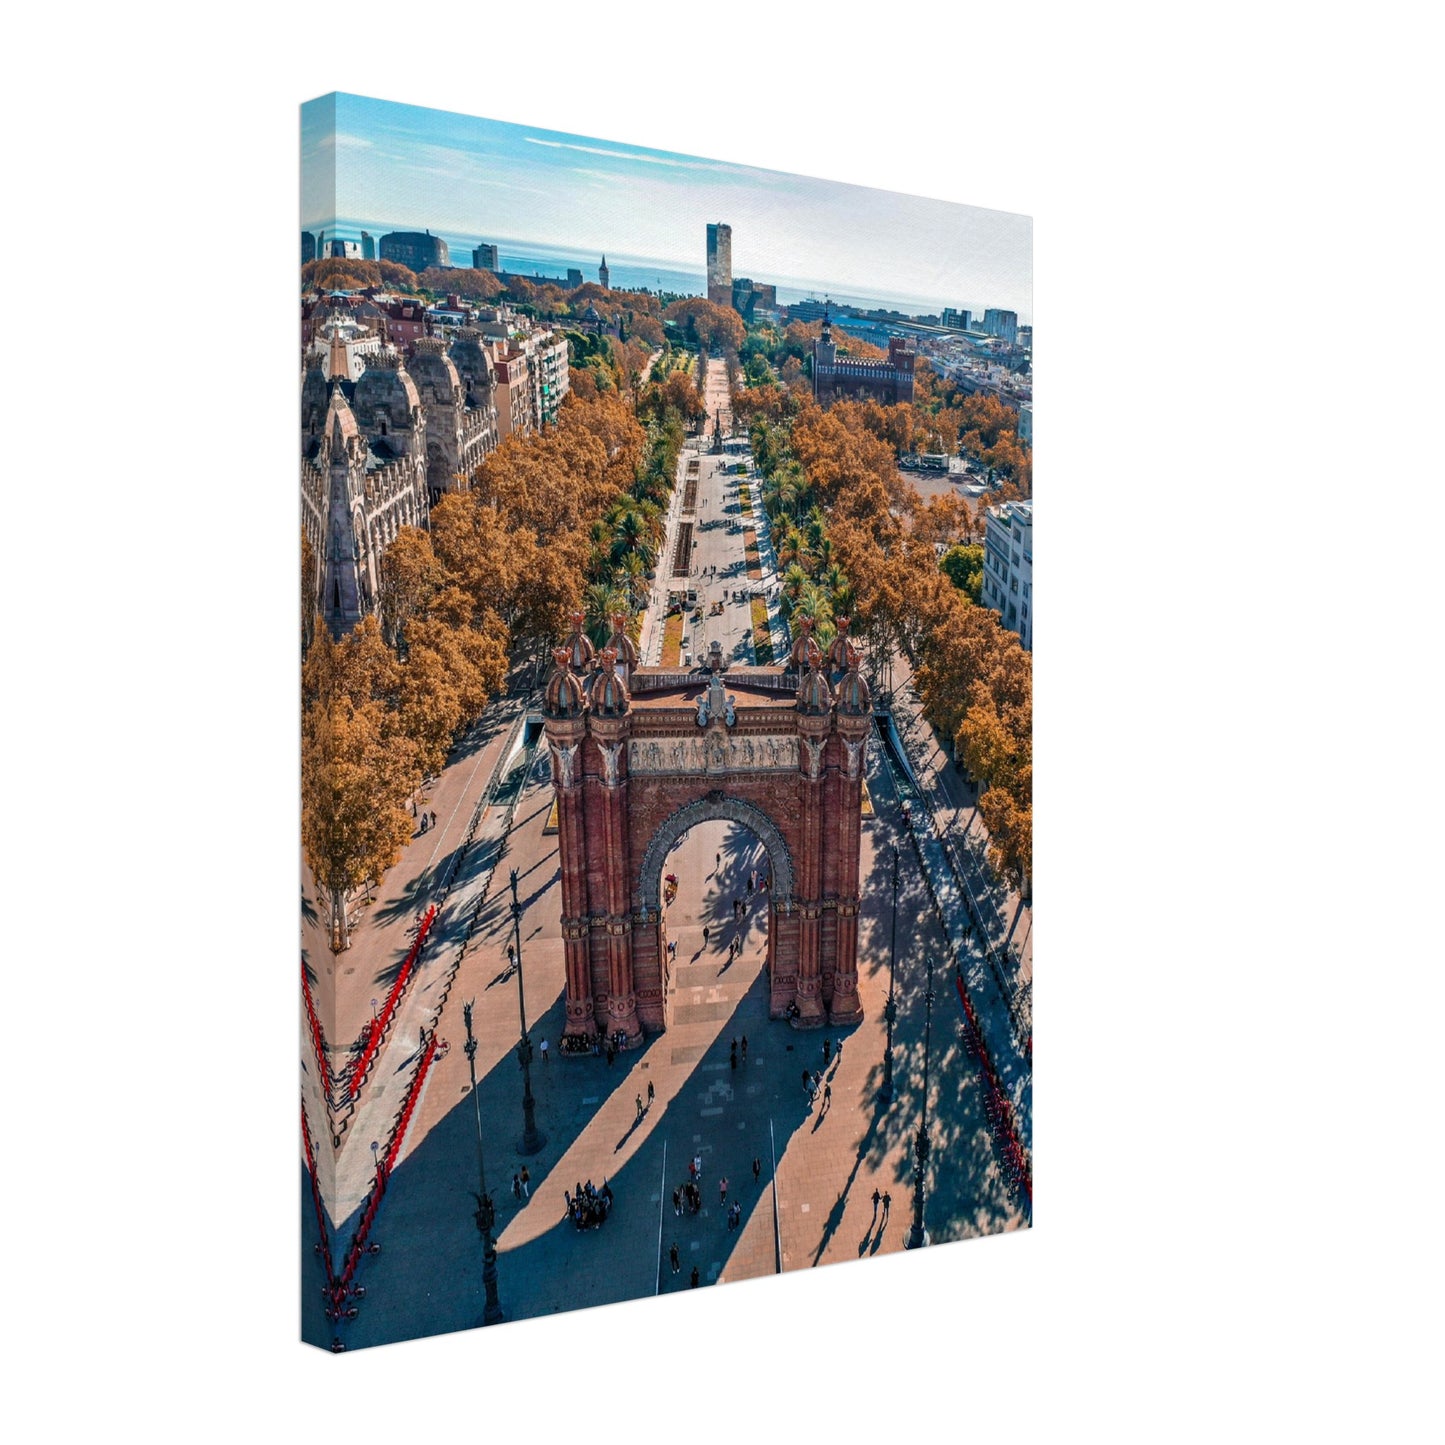 Barcelona Arc de Triomf Canvas